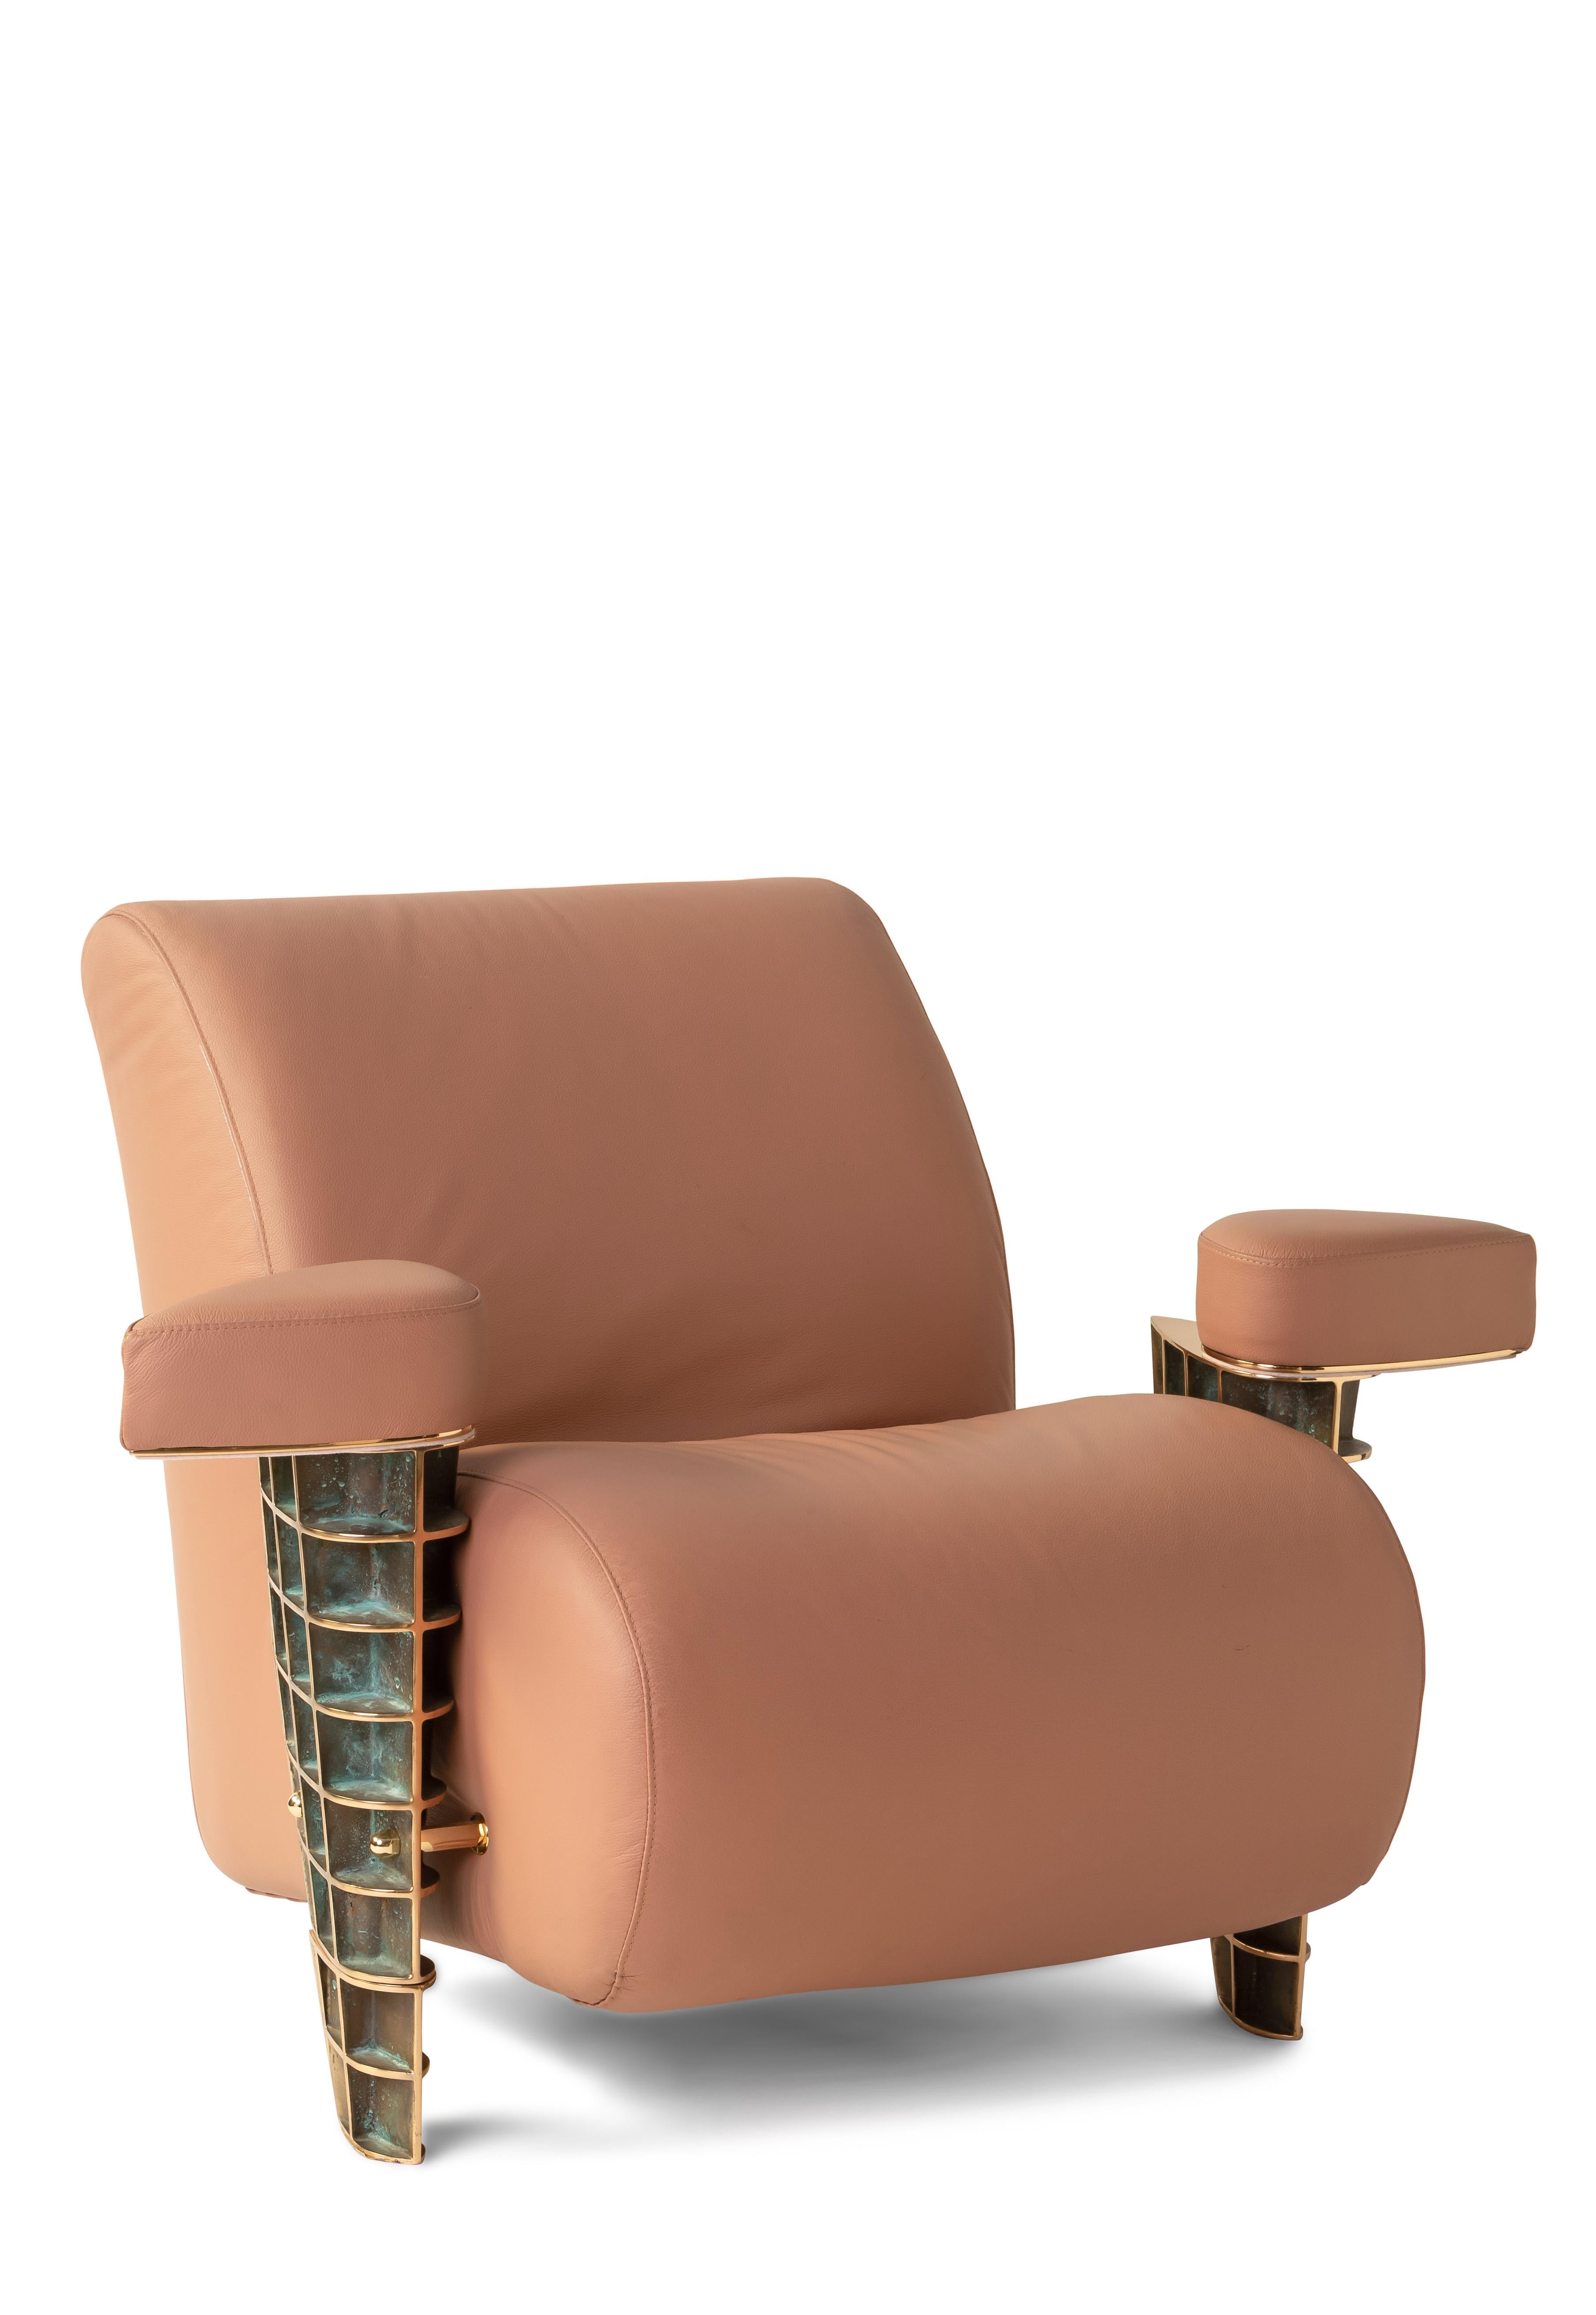 Elvira est un fauteuil sculpture et un chef-d'œuvre sur mesure créé par Angela Ardisson pour sa collection Avio en 1997. Le design des précieux moulages en bronze s'inspire de façon unique du fuselage des avions. 
La structure porteuse est